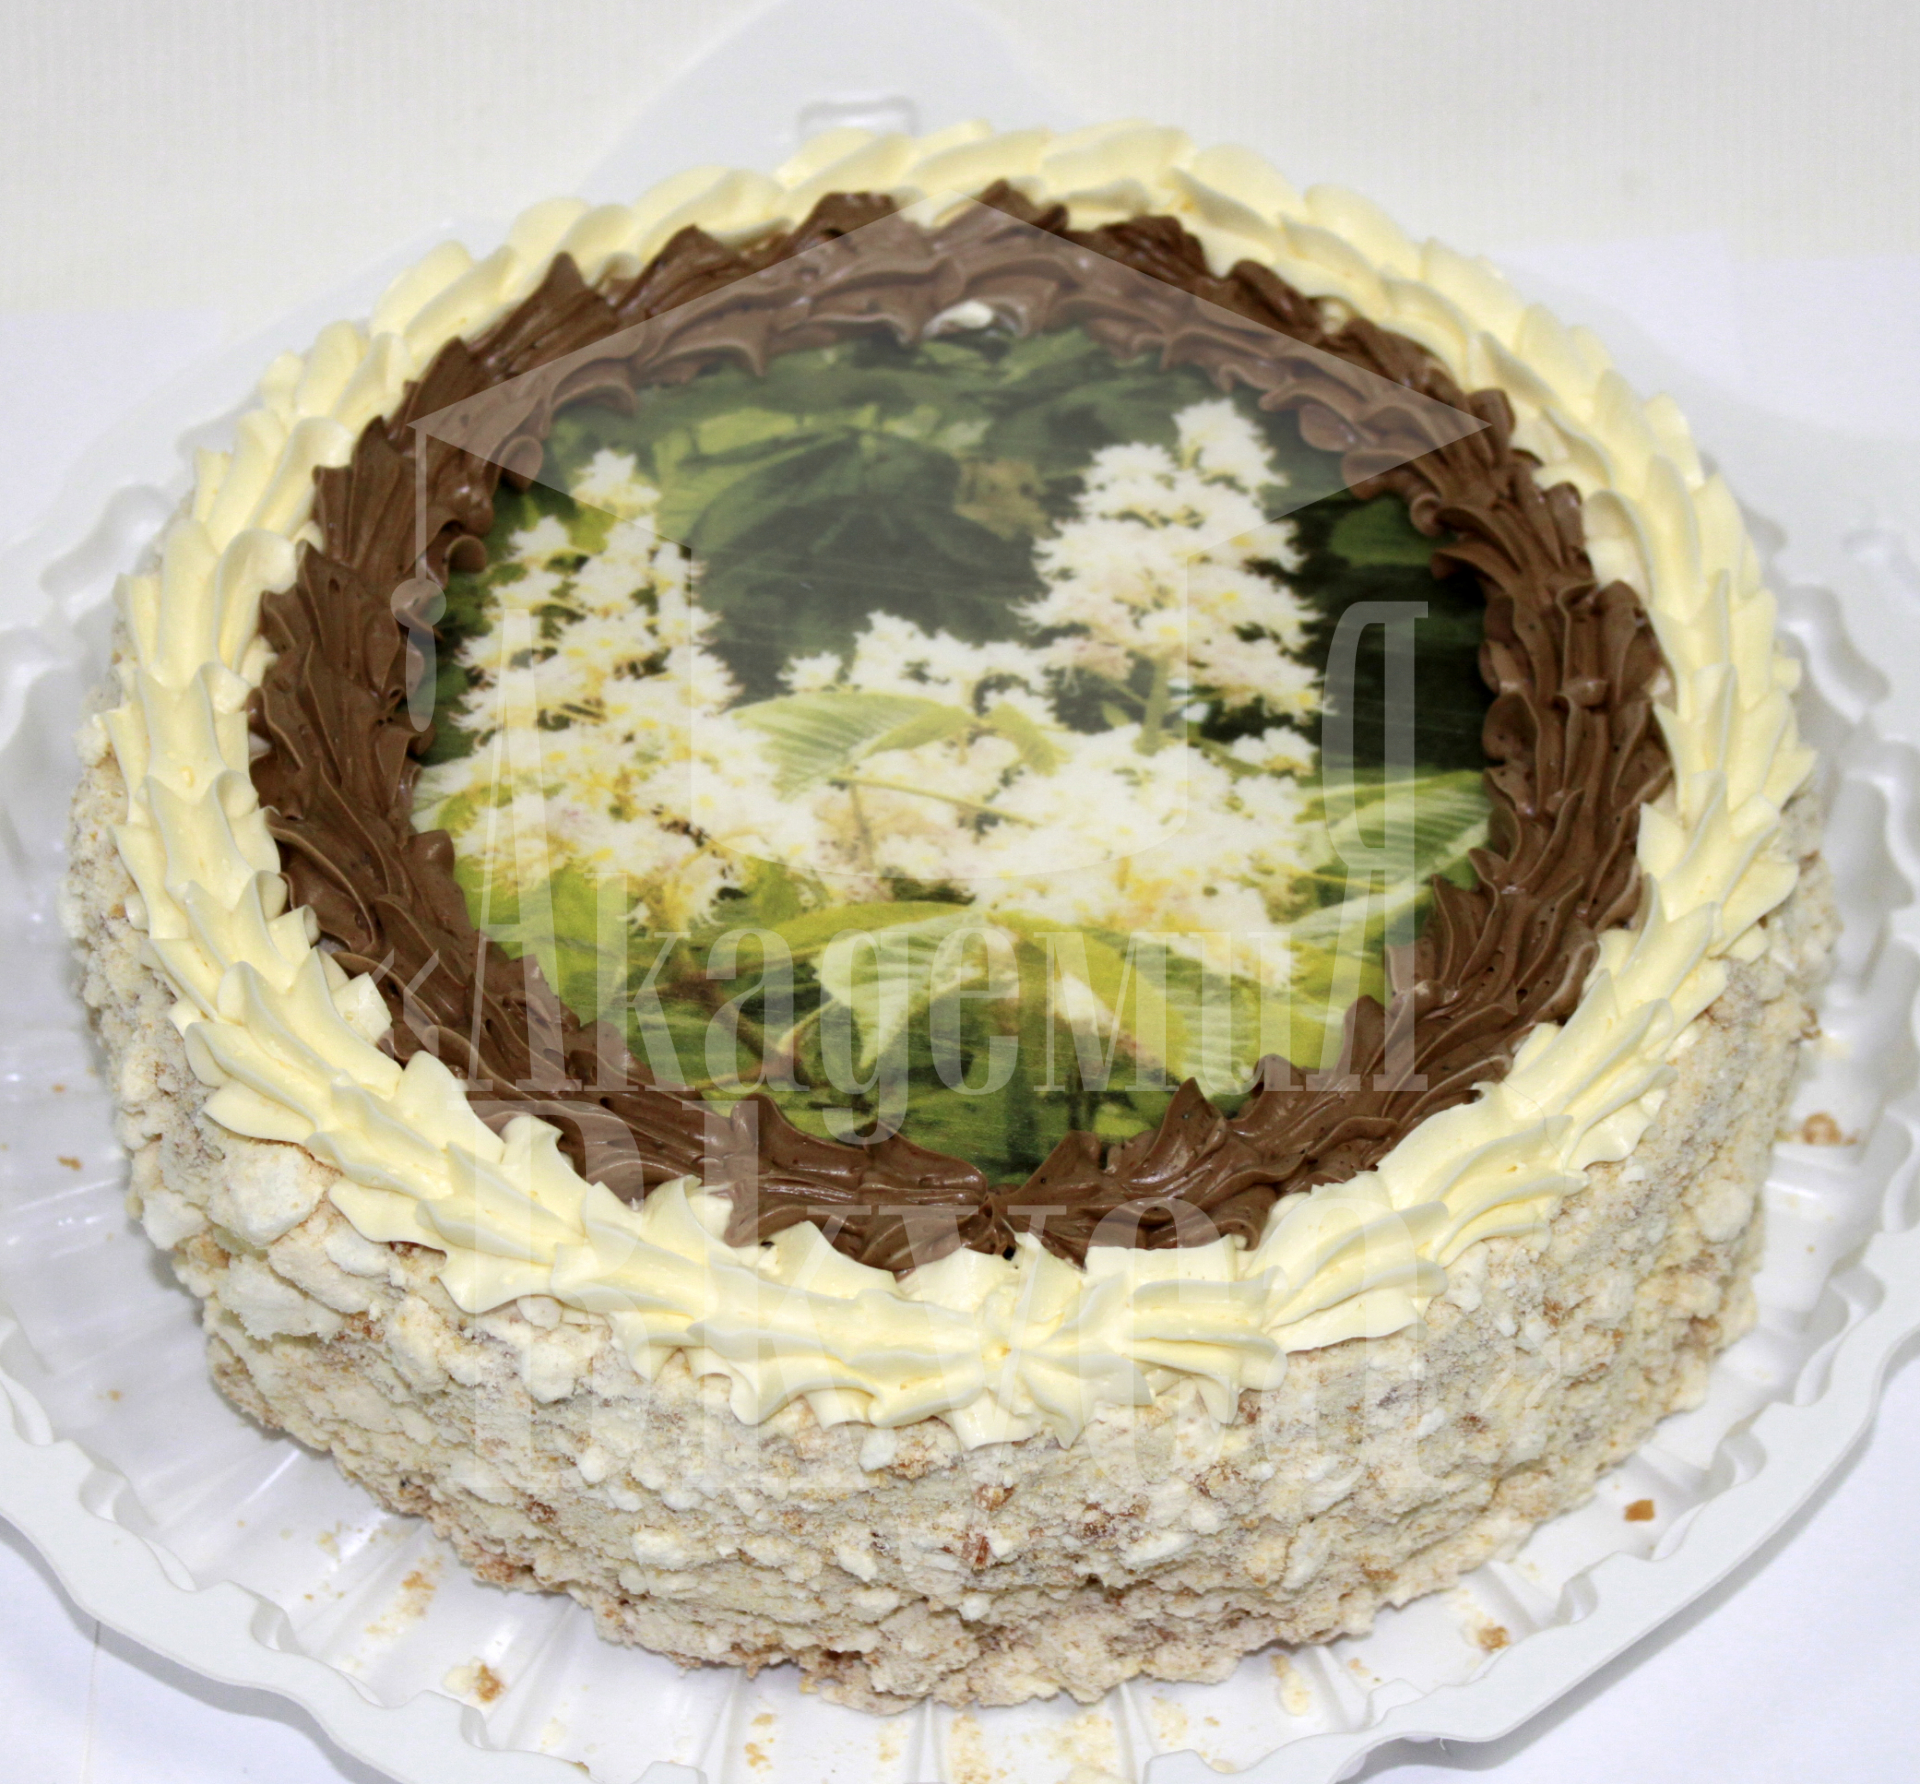 Торт "Киевский"